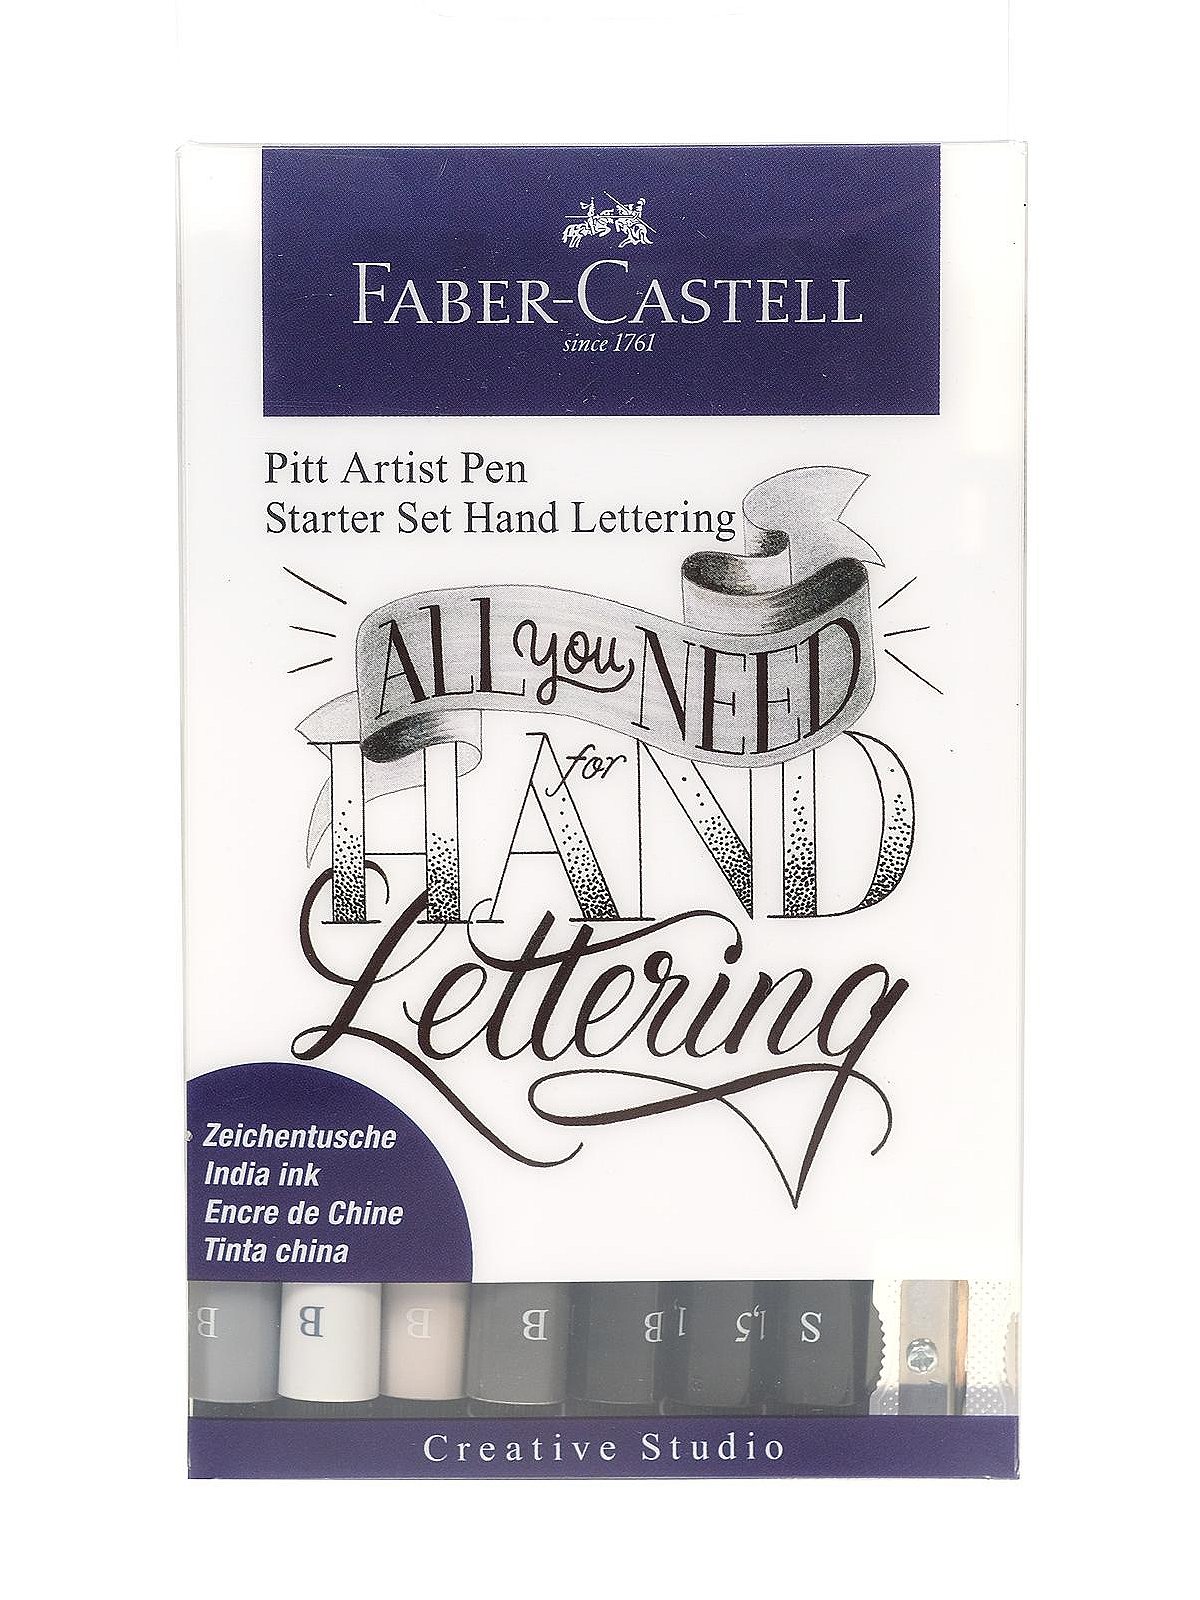 FABER-CASTELL Pitt Artist Pen Modern Lettering